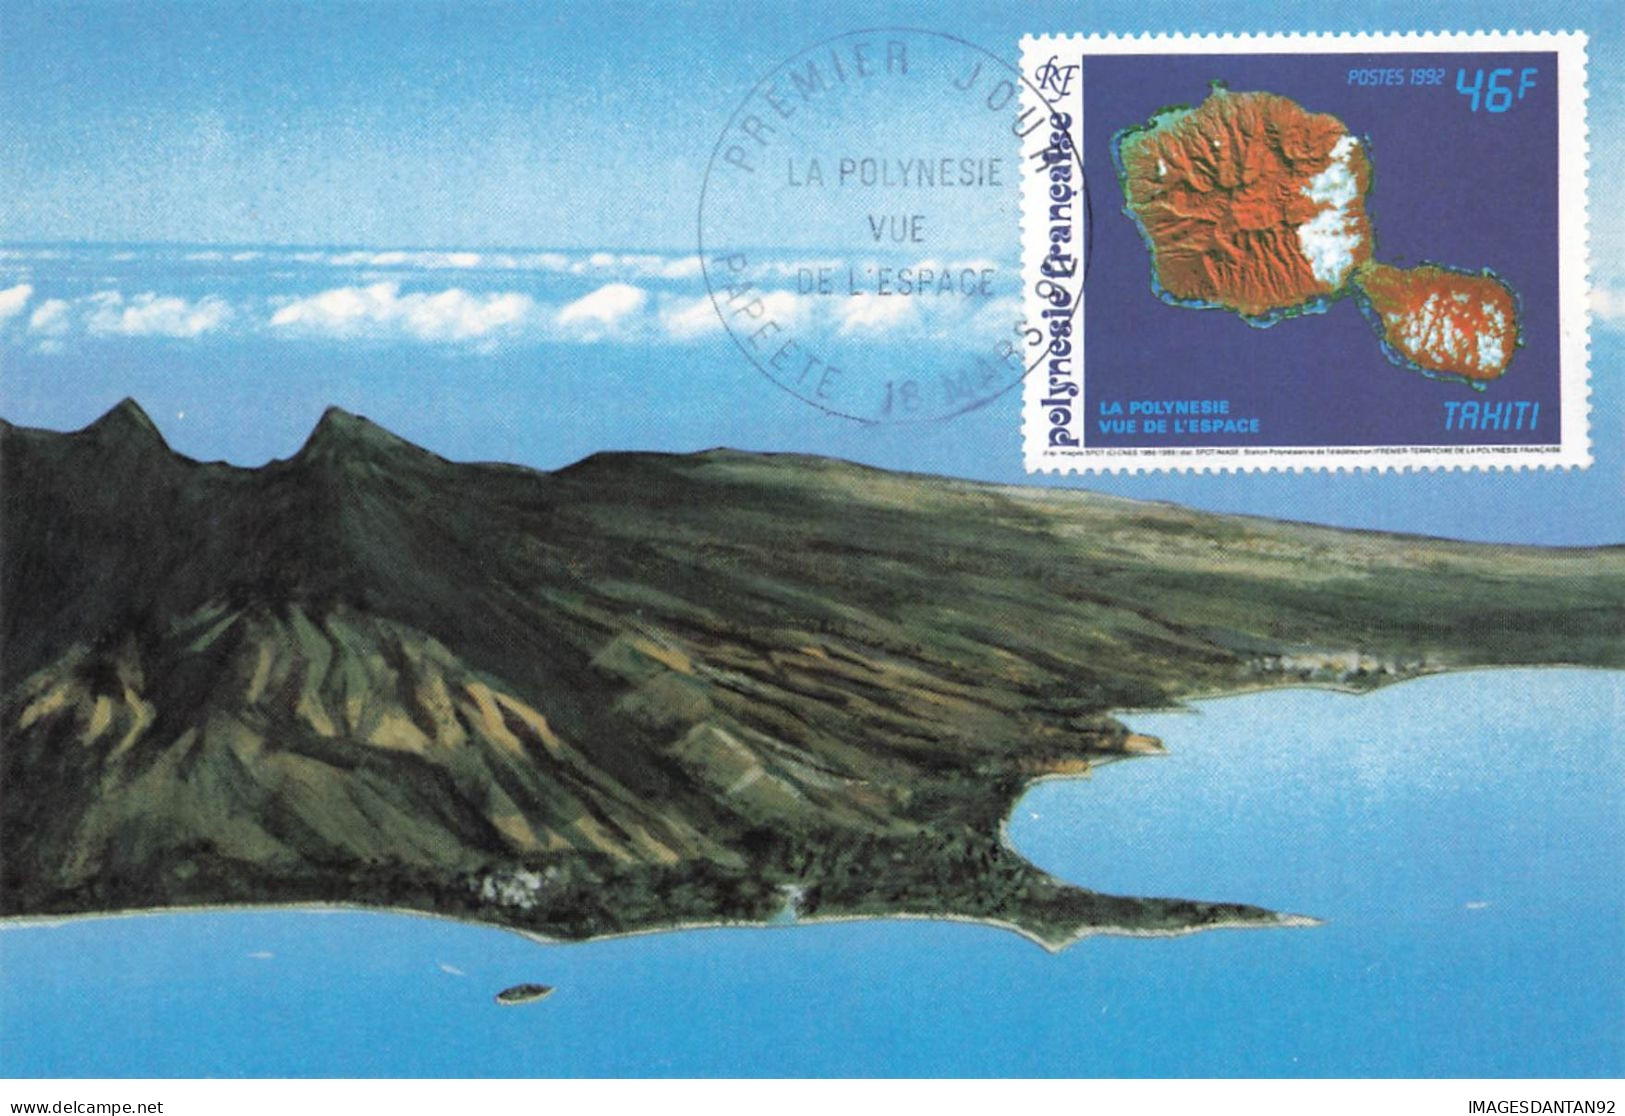 CARTE MAXIMUM #23500 POLYNESIE FRANCAISE PAPEETE 1992 VUE DE L ESPACE TAHITI - Cartes-maximum